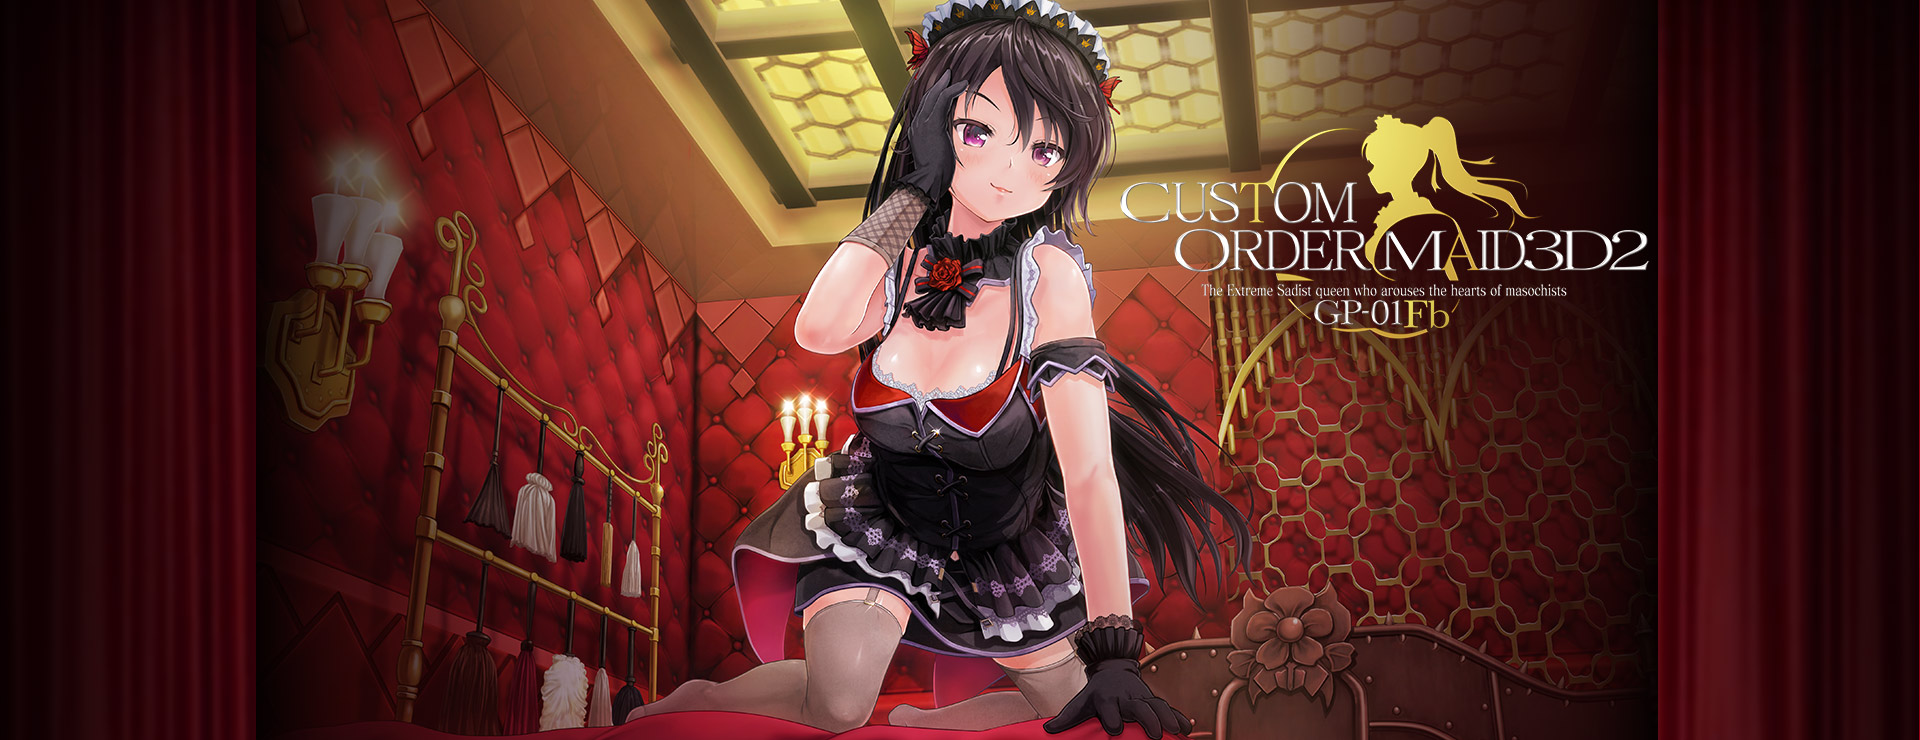 Custom Order Maid 3D2 Extreme Sadist Queen GP-01Fb - Simulation Game